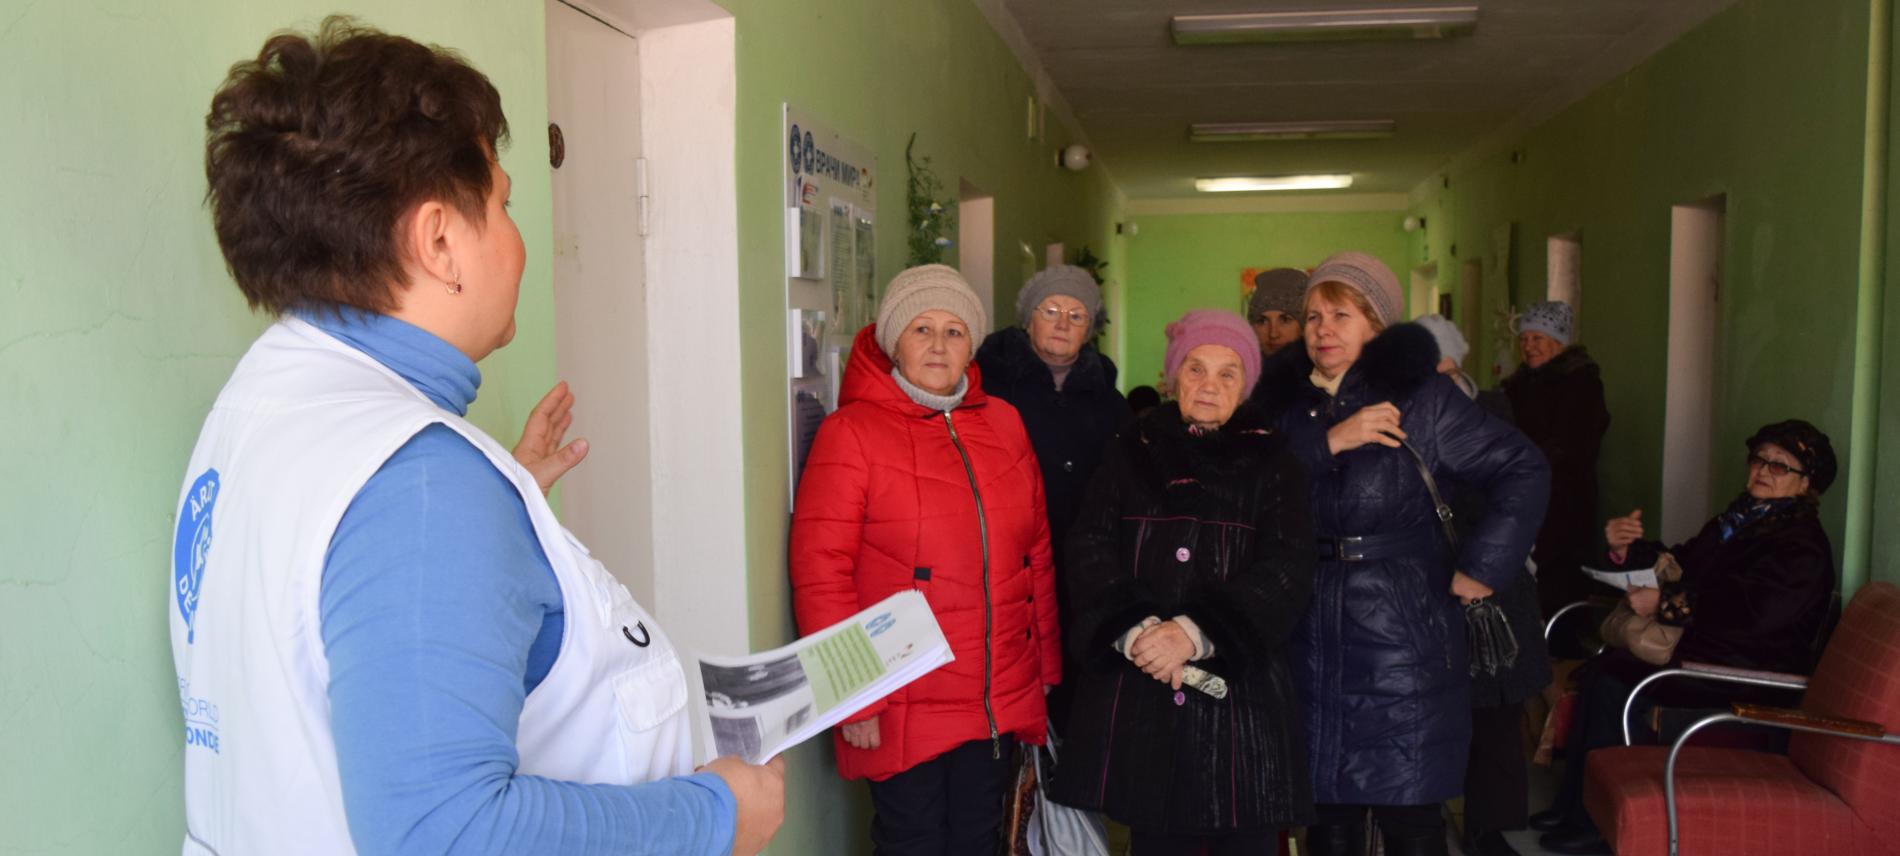 Viele Menschen leiden unter der schlechten Versorgung entlang der Kontaktlinie in Luhansk und Donesk. Foto: Ärzte der Welt